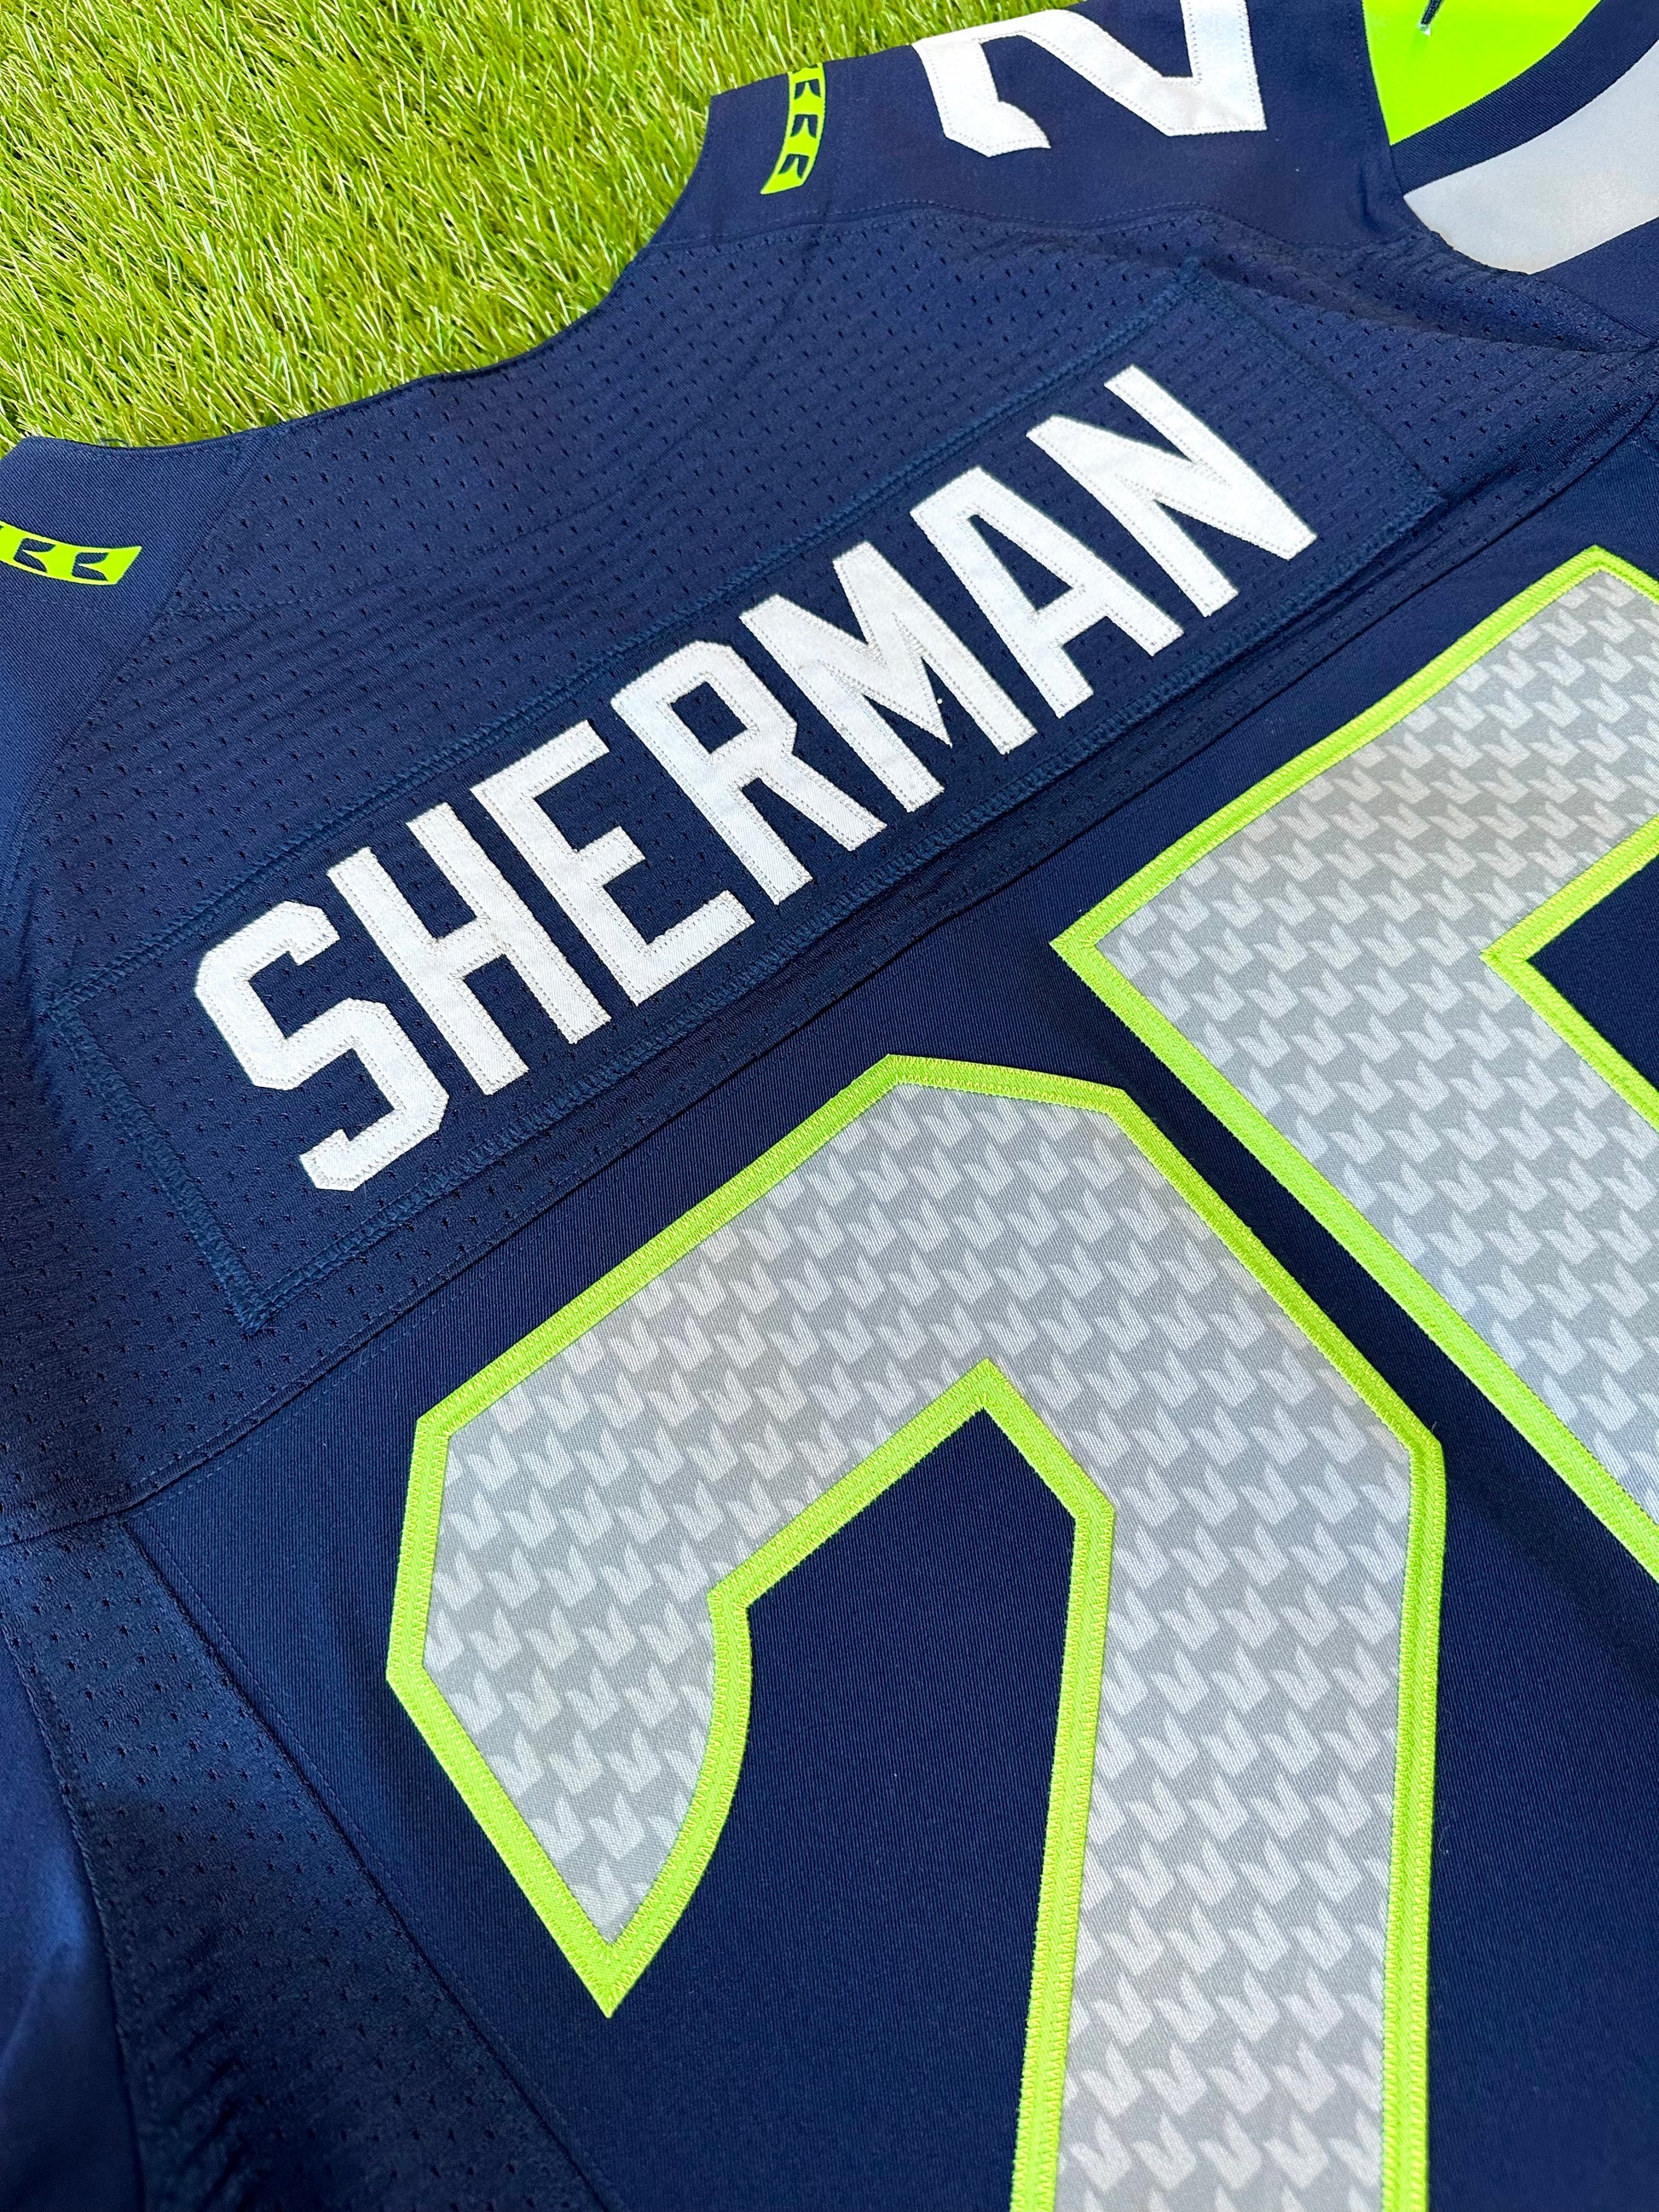 Richard Sherman Seattle Seahawks Super Bowl XLIV Stitched Jersey